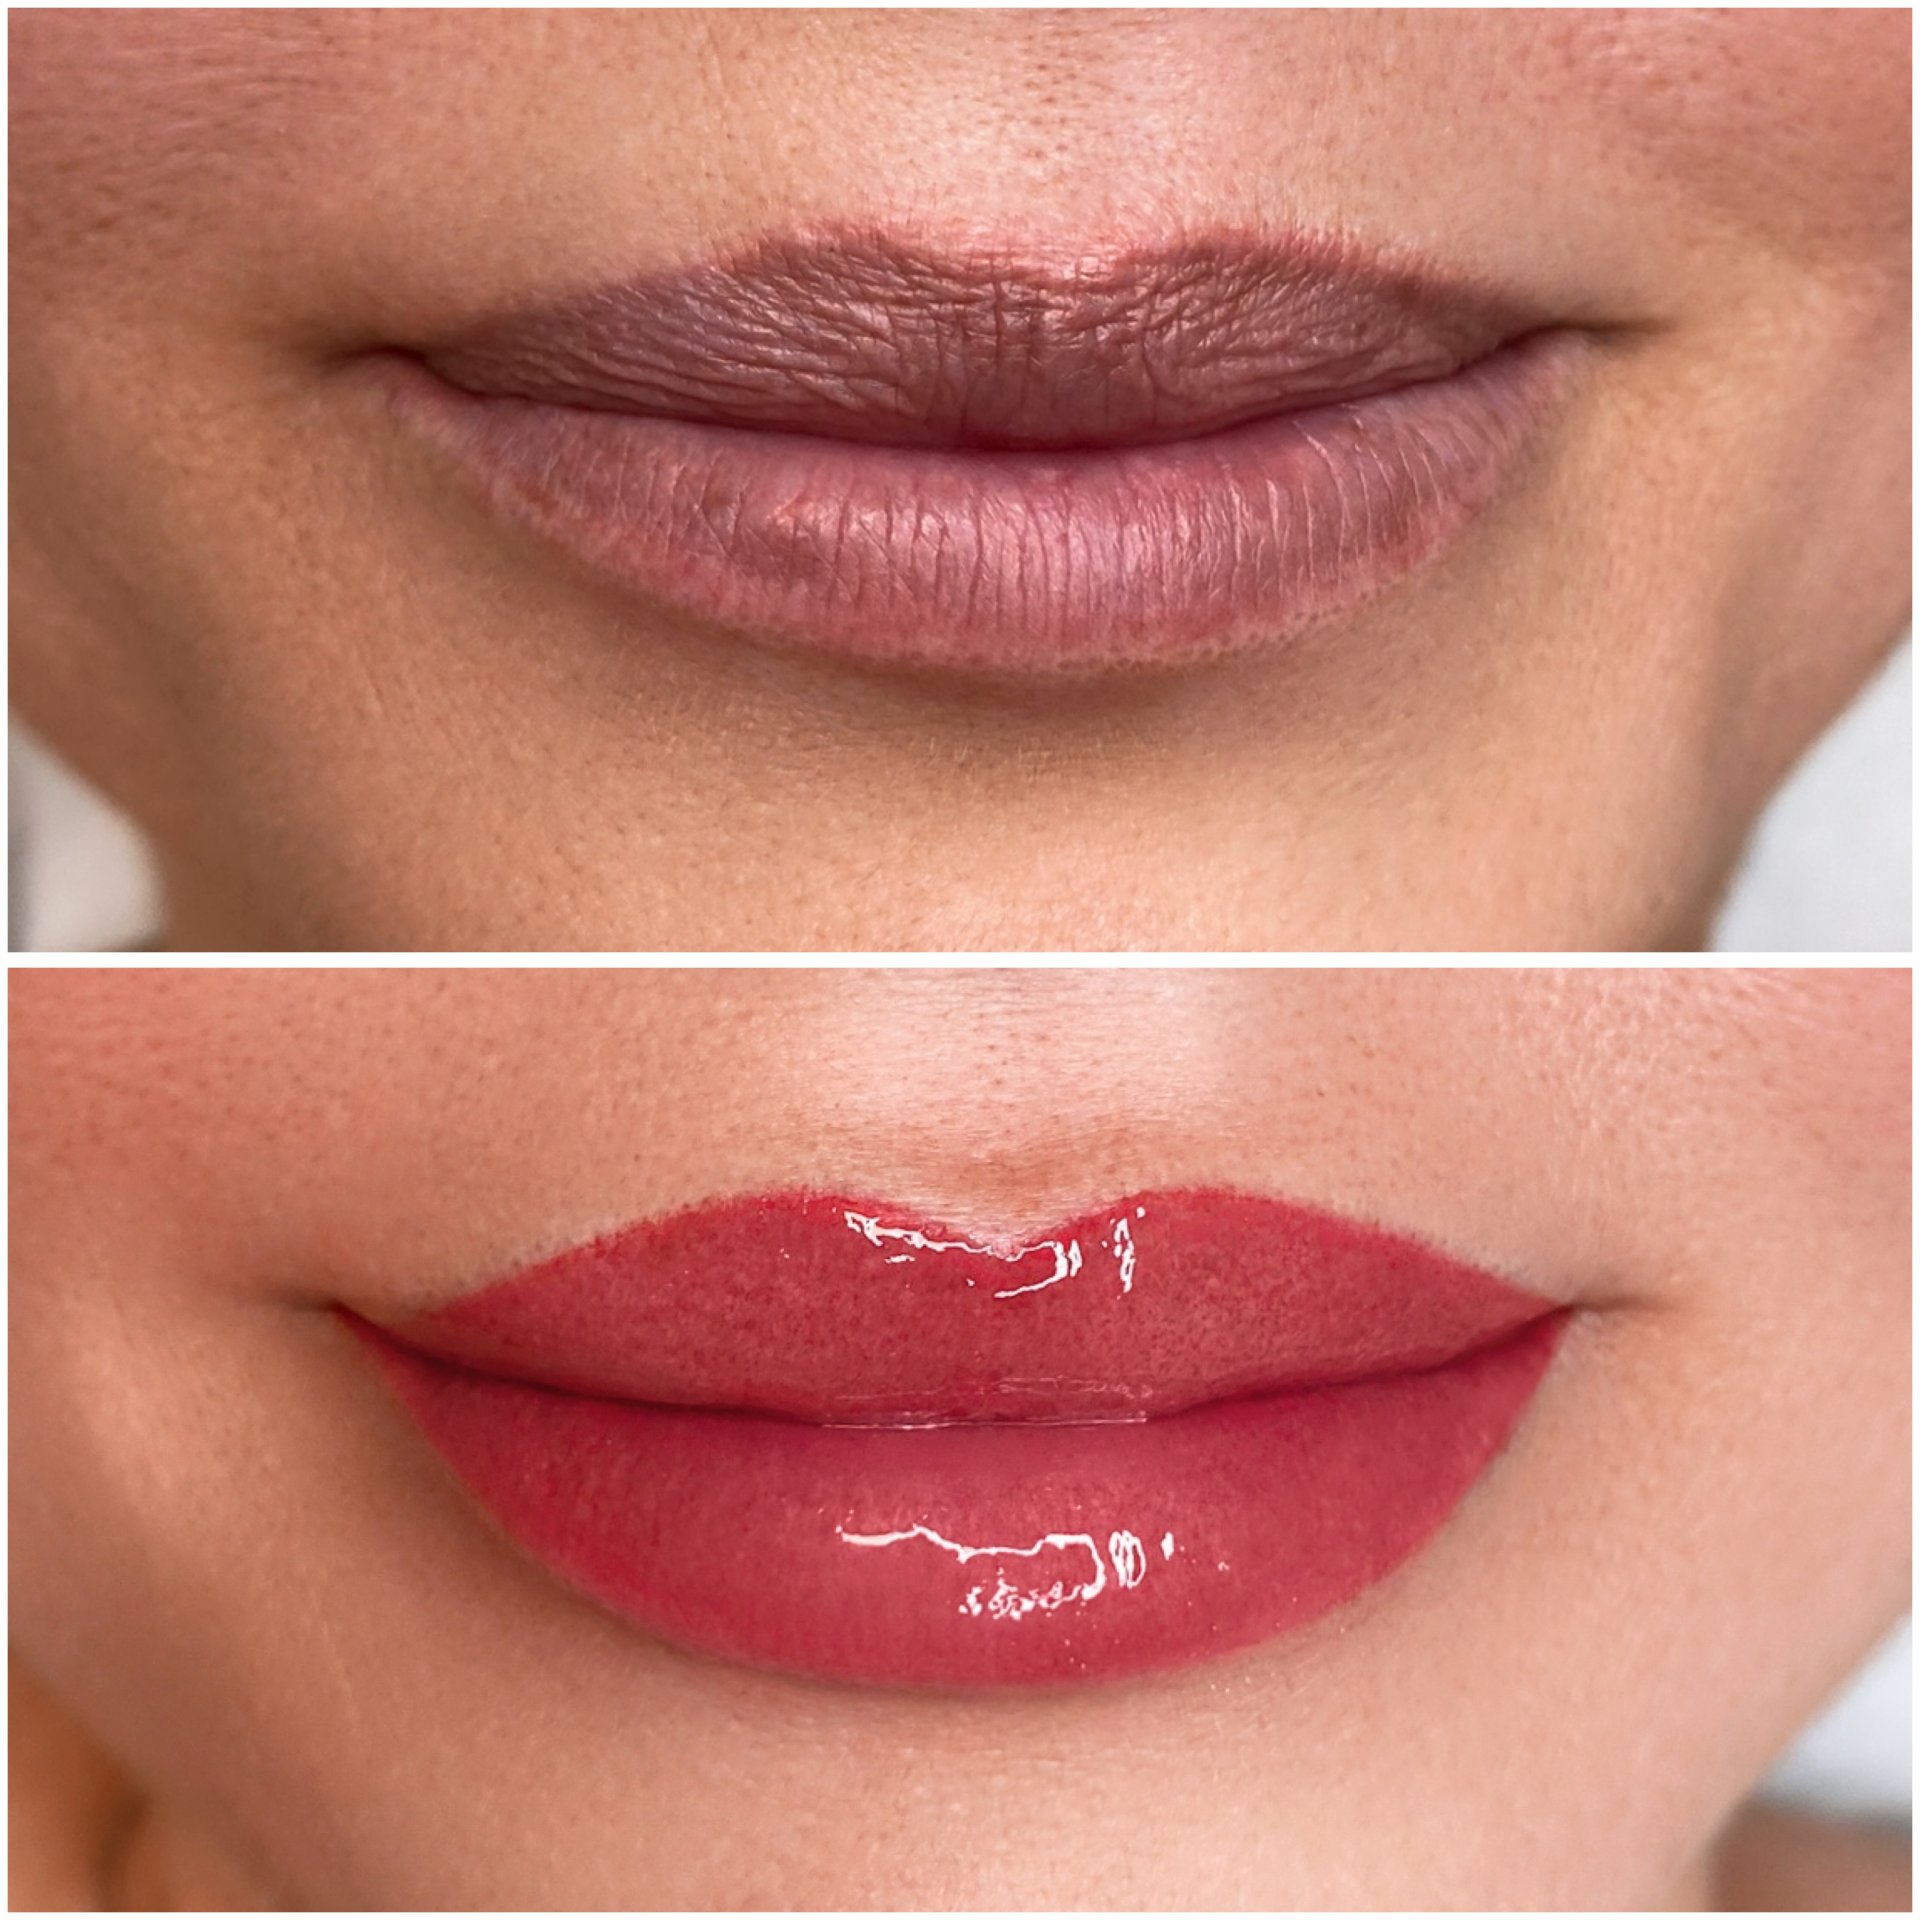 Lips | Lip Blushing Permanent Makeup - JAIBROWS